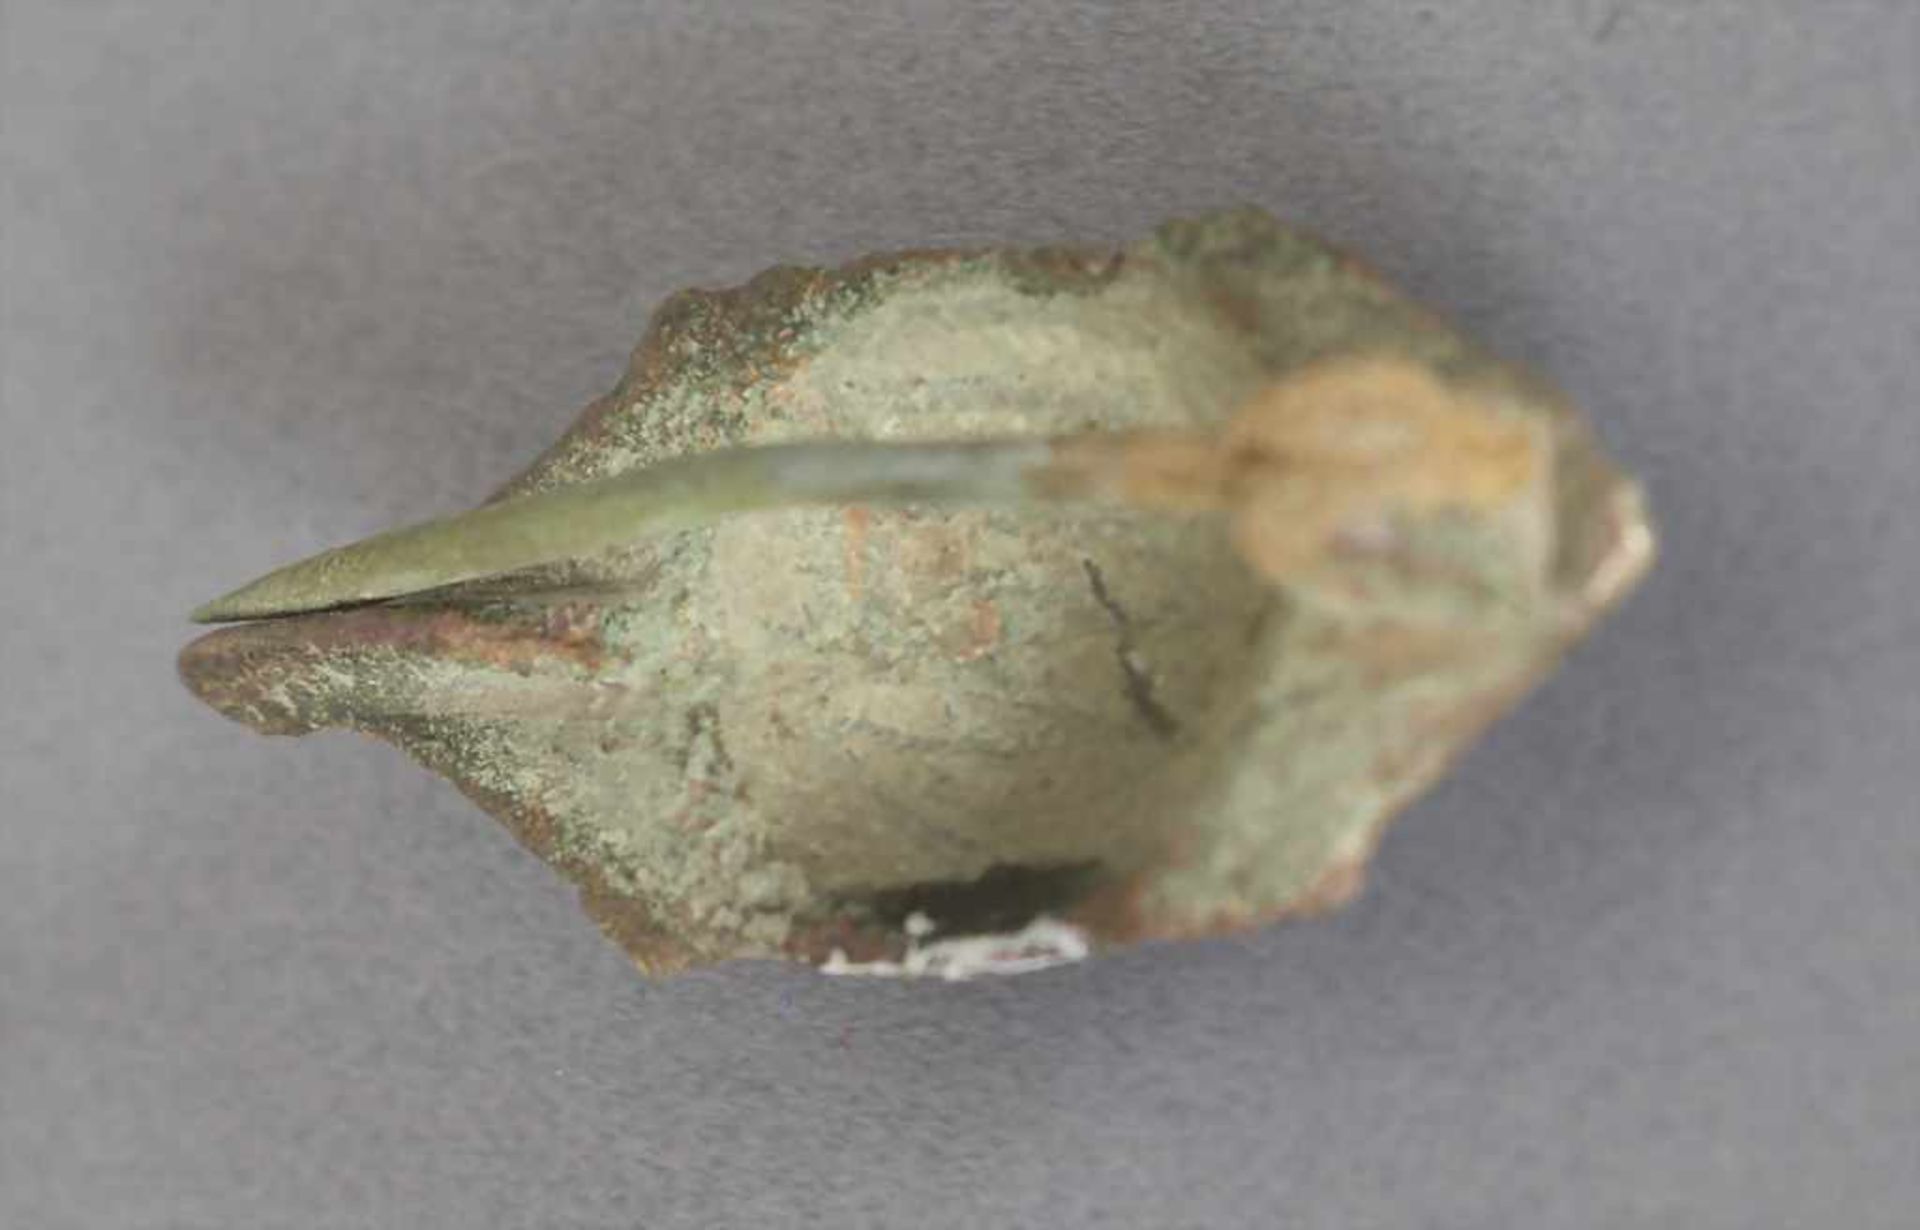 Römische Fibel / A Roman fibulaMaterial: Bronze,Länge: 3,6 cm,Zustand: gut, alt restauriert, - Bild 3 aus 3